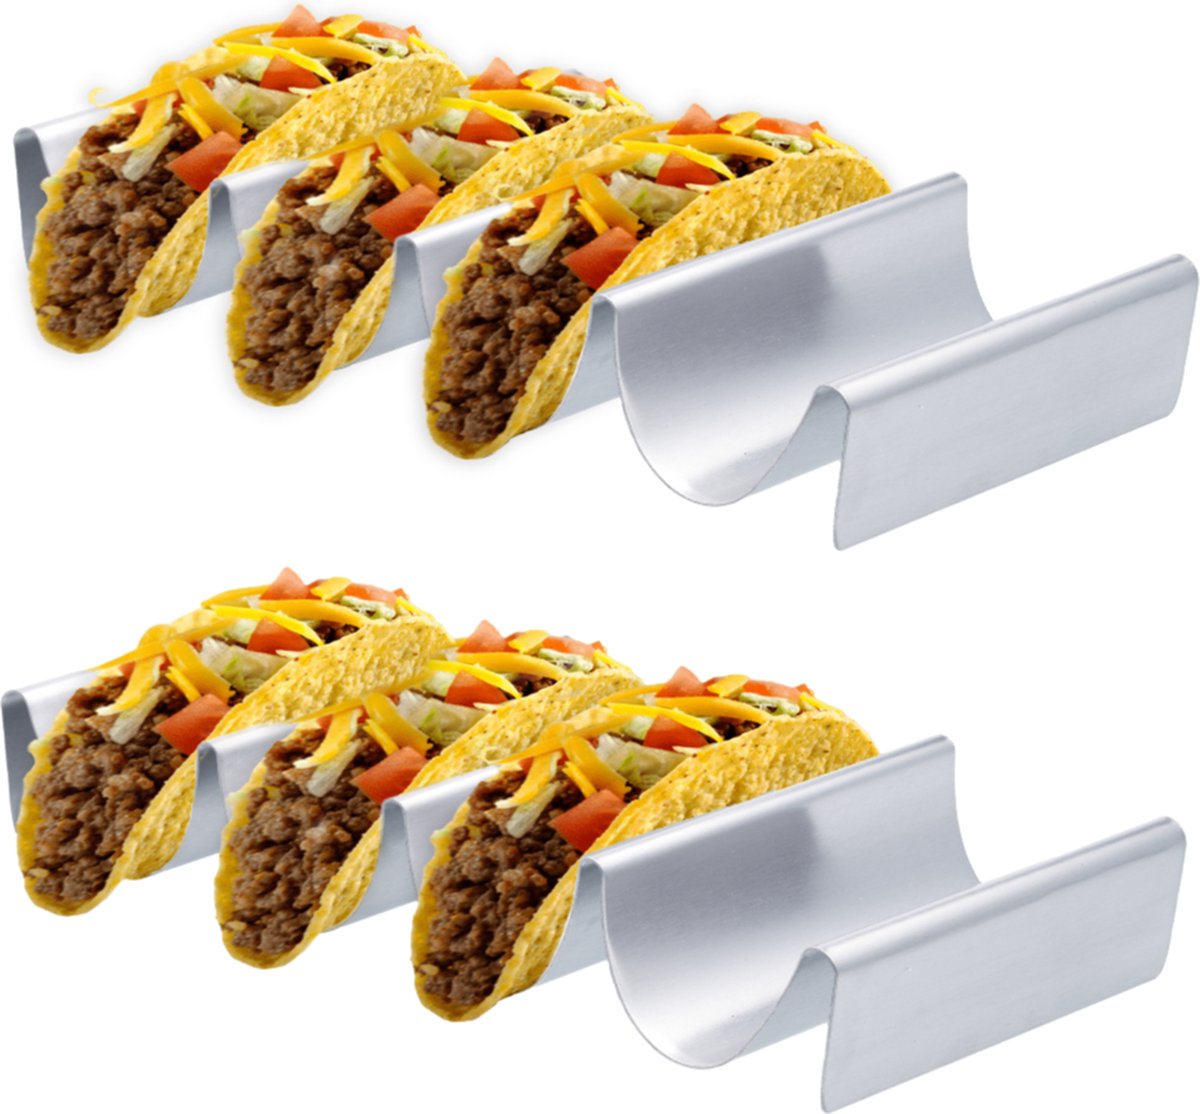 YUGN Taco houder Ovenbestendig SET 2 stuks - Voor 8 Tacos - RVS Tortilla houder - Taco standaard - Cadeautip